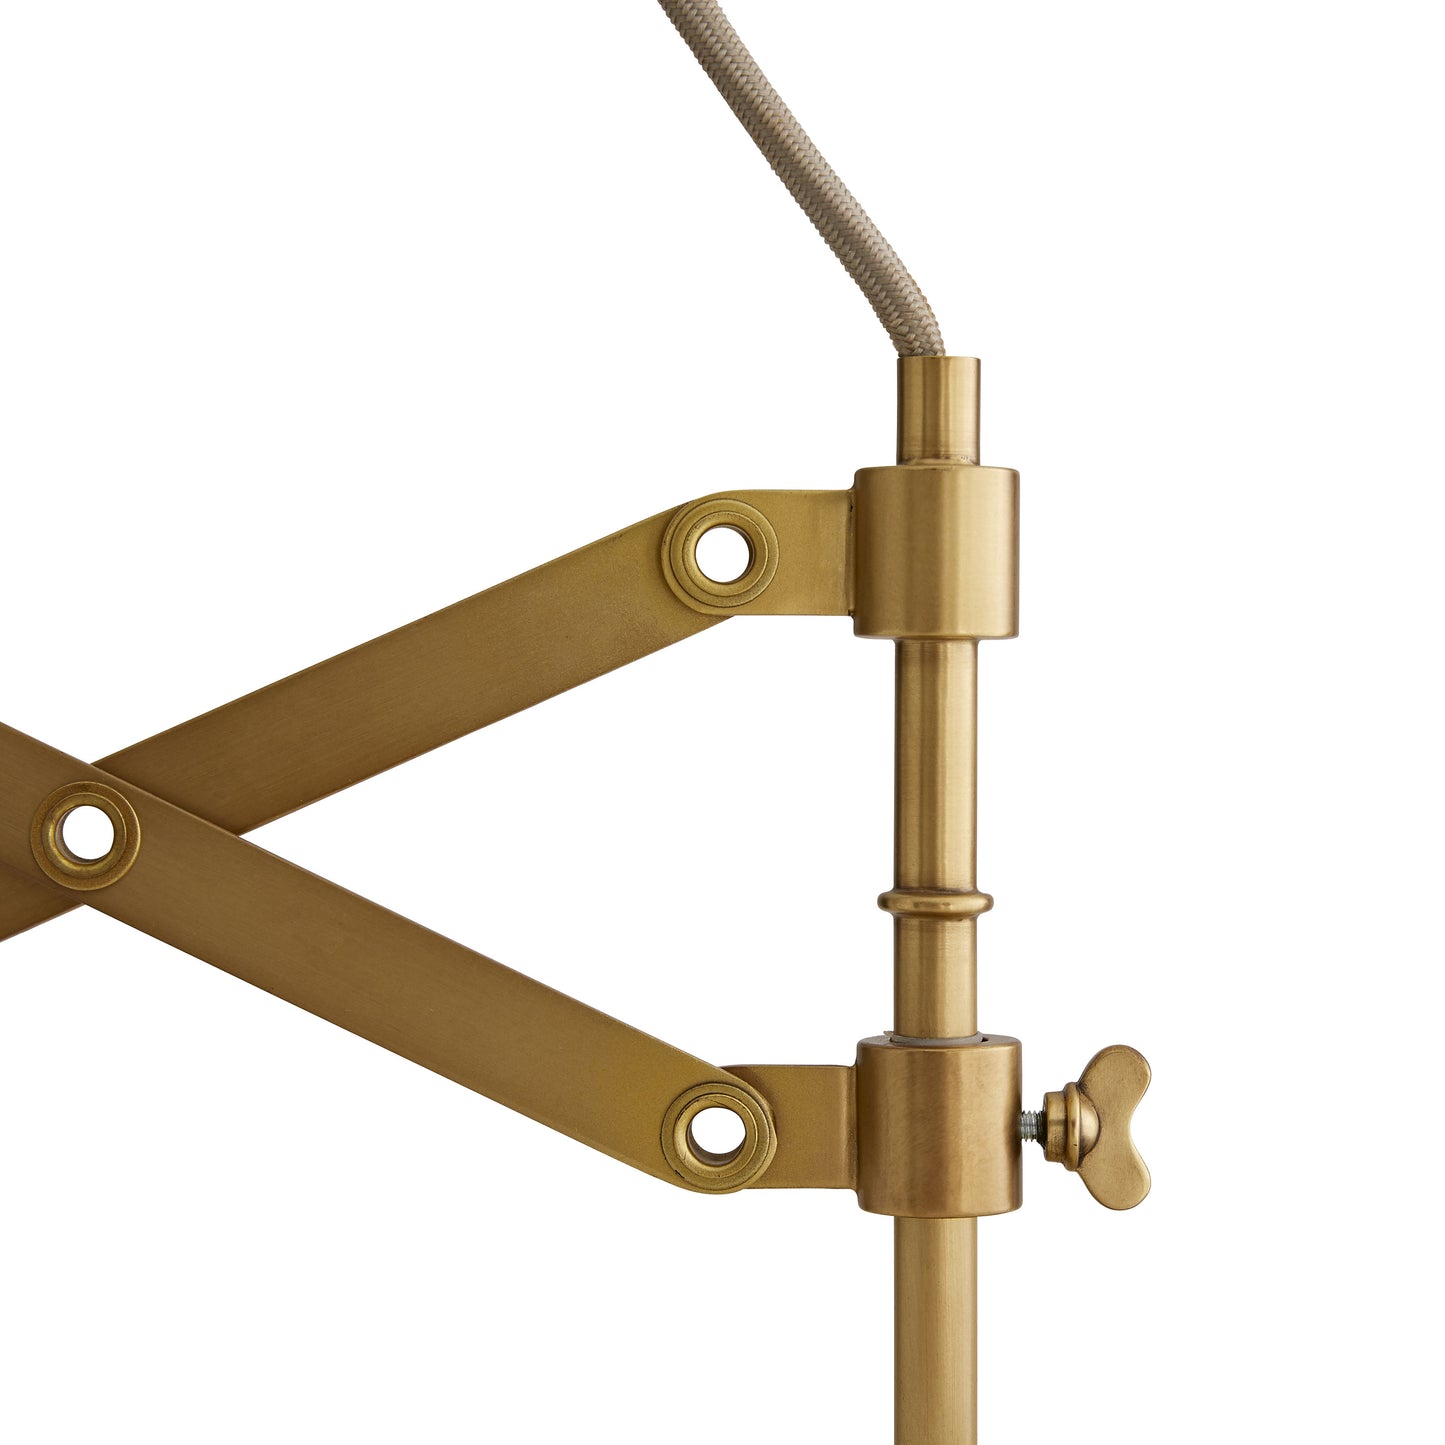 Pantograph Pendant Light Fixture - Antique Brass Dual Pendant for Dynamic Spaces